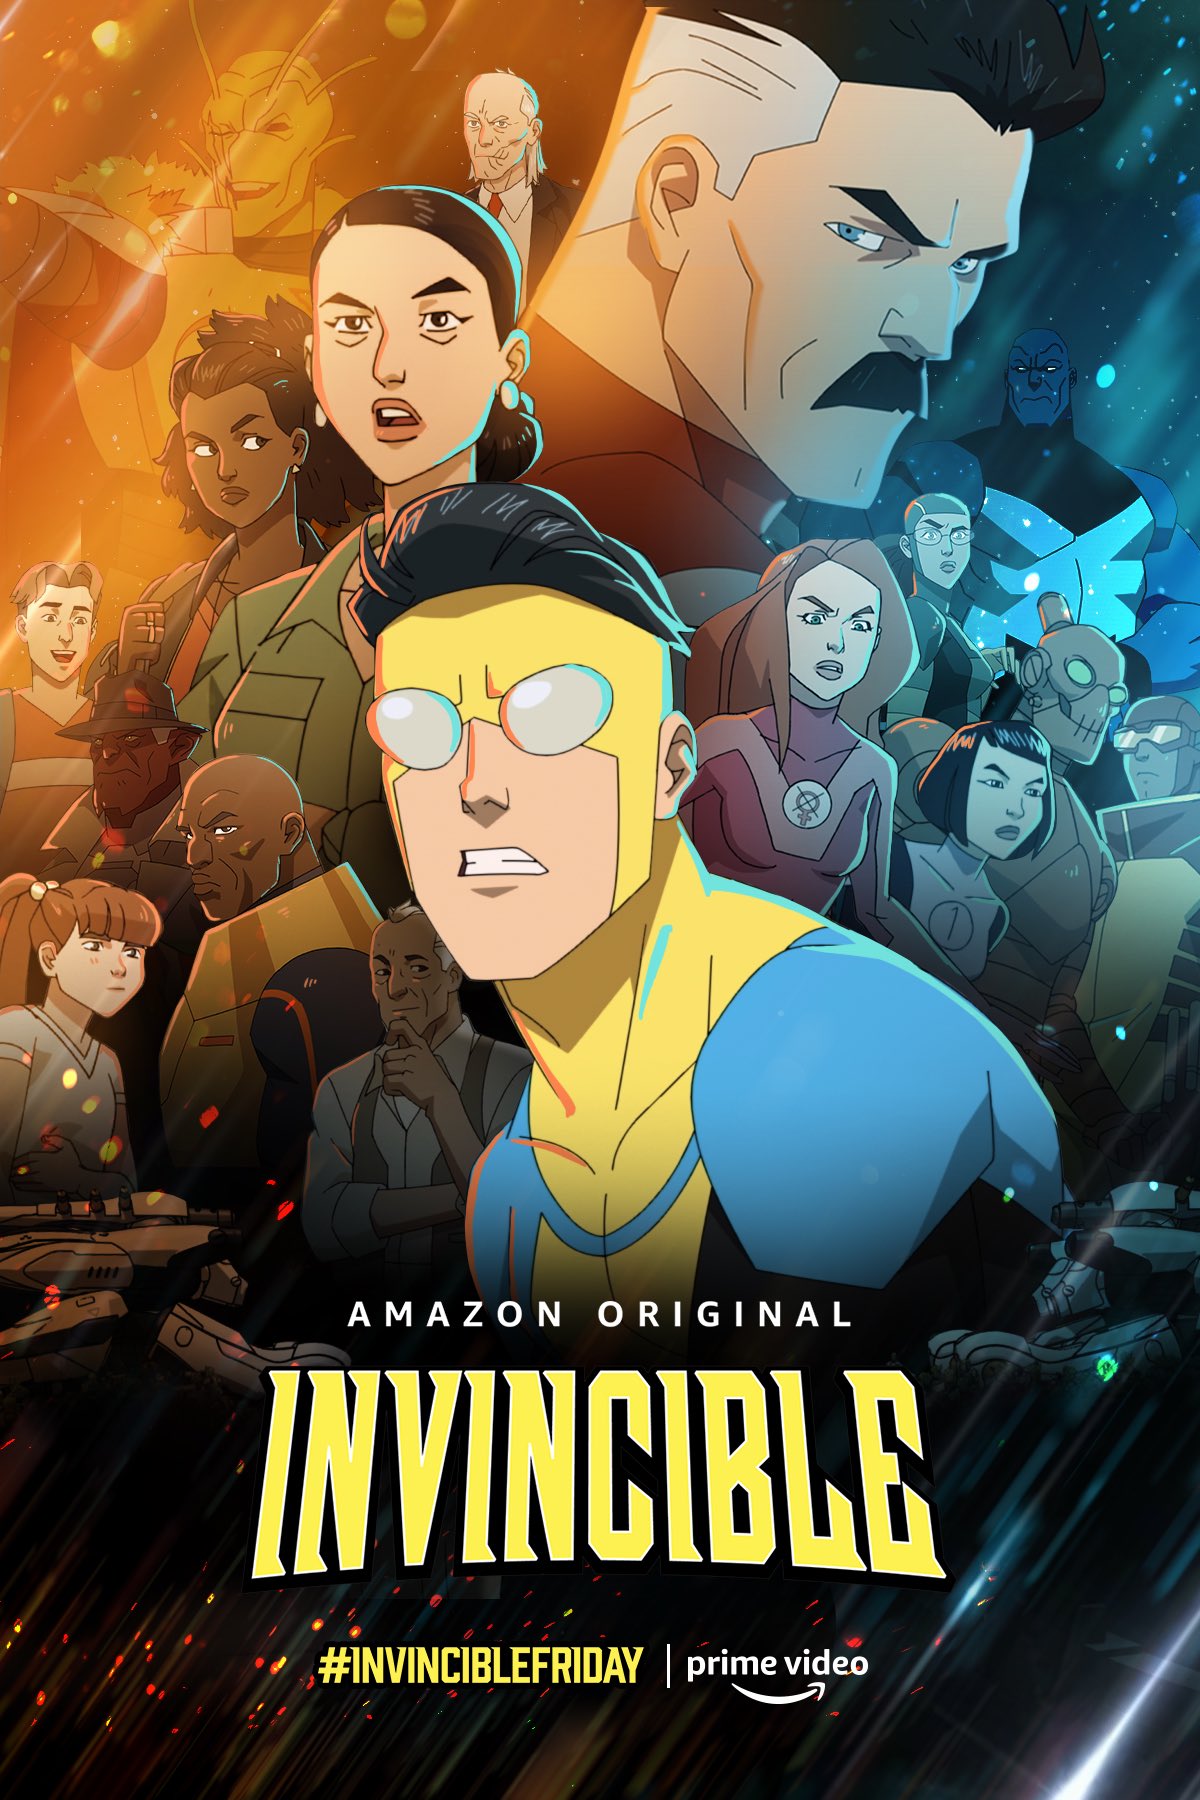 Invincible icon | Invincible comic, American dragon, Anime character design